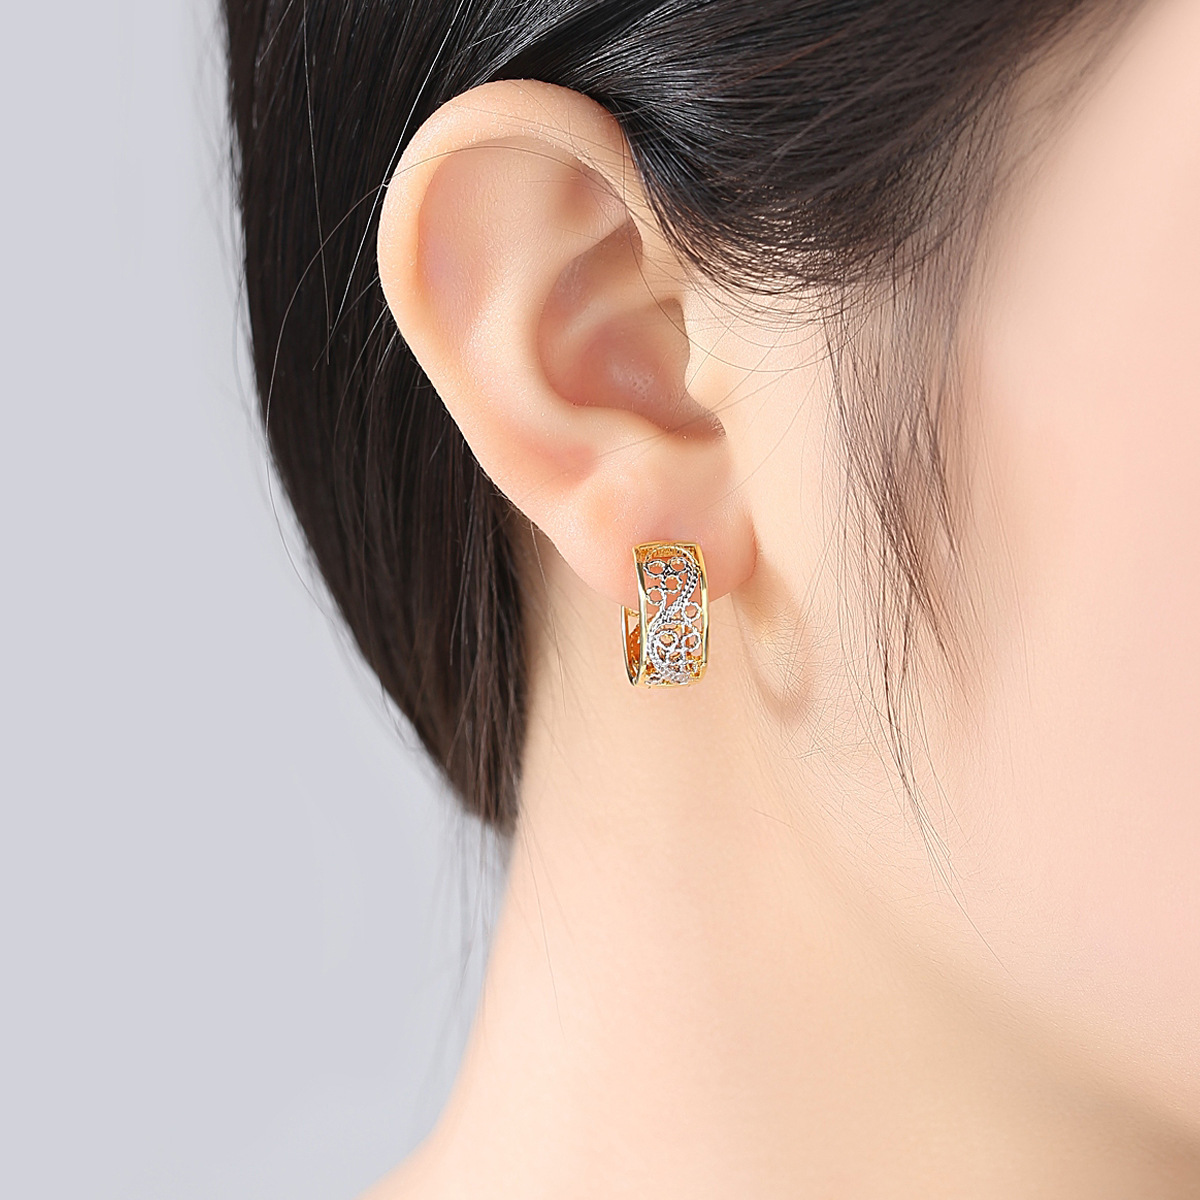 Gold fashion European style zircon earrings for women